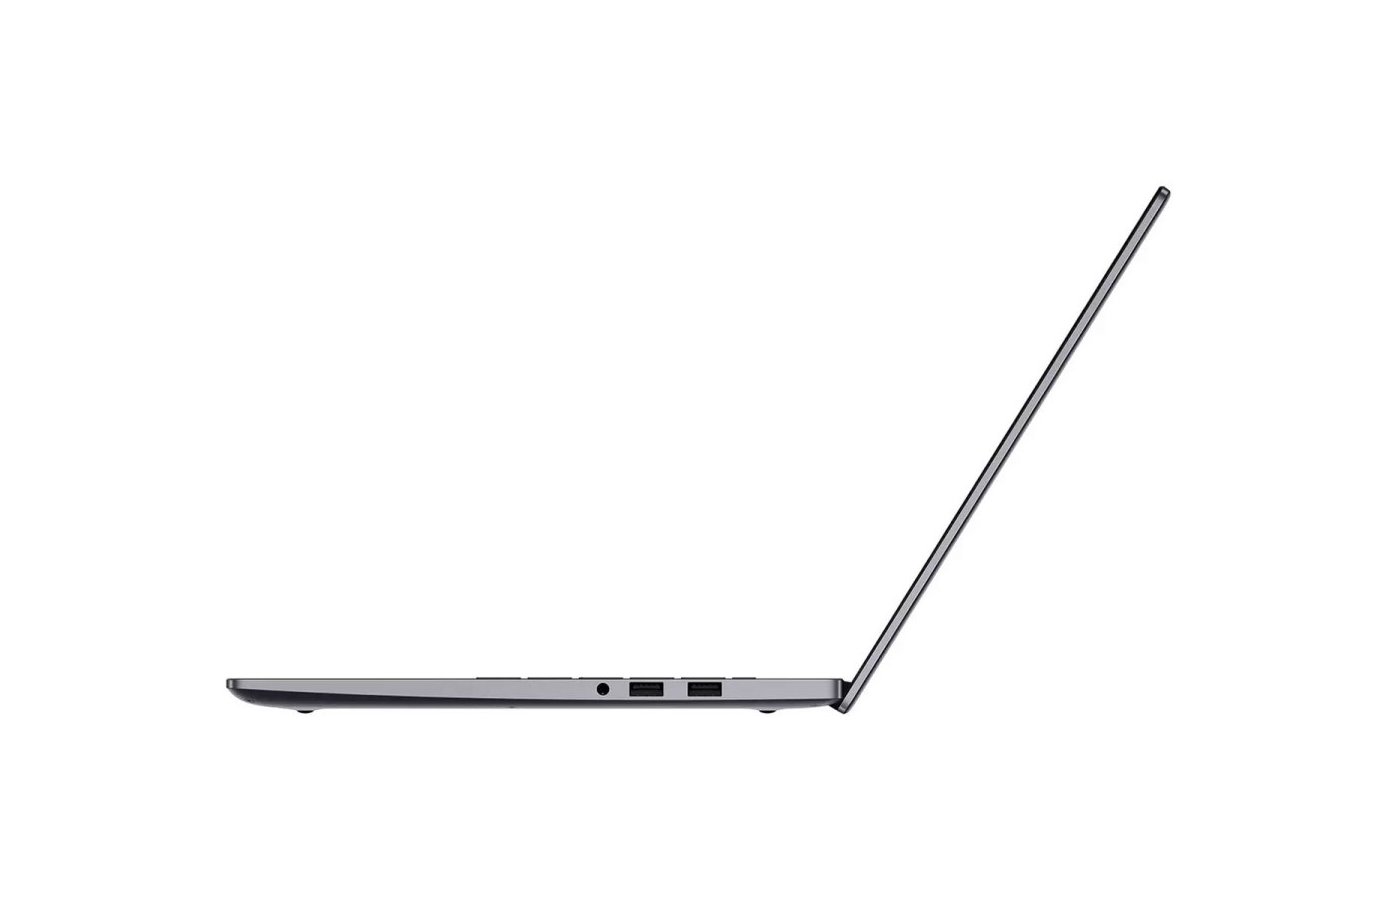 D 15 bode wdh9. 15.6" Ноутбук Huawei MATEBOOK D 15 Bode-wfh9 серый. MATEBOOK d15 Bode-wdh9.